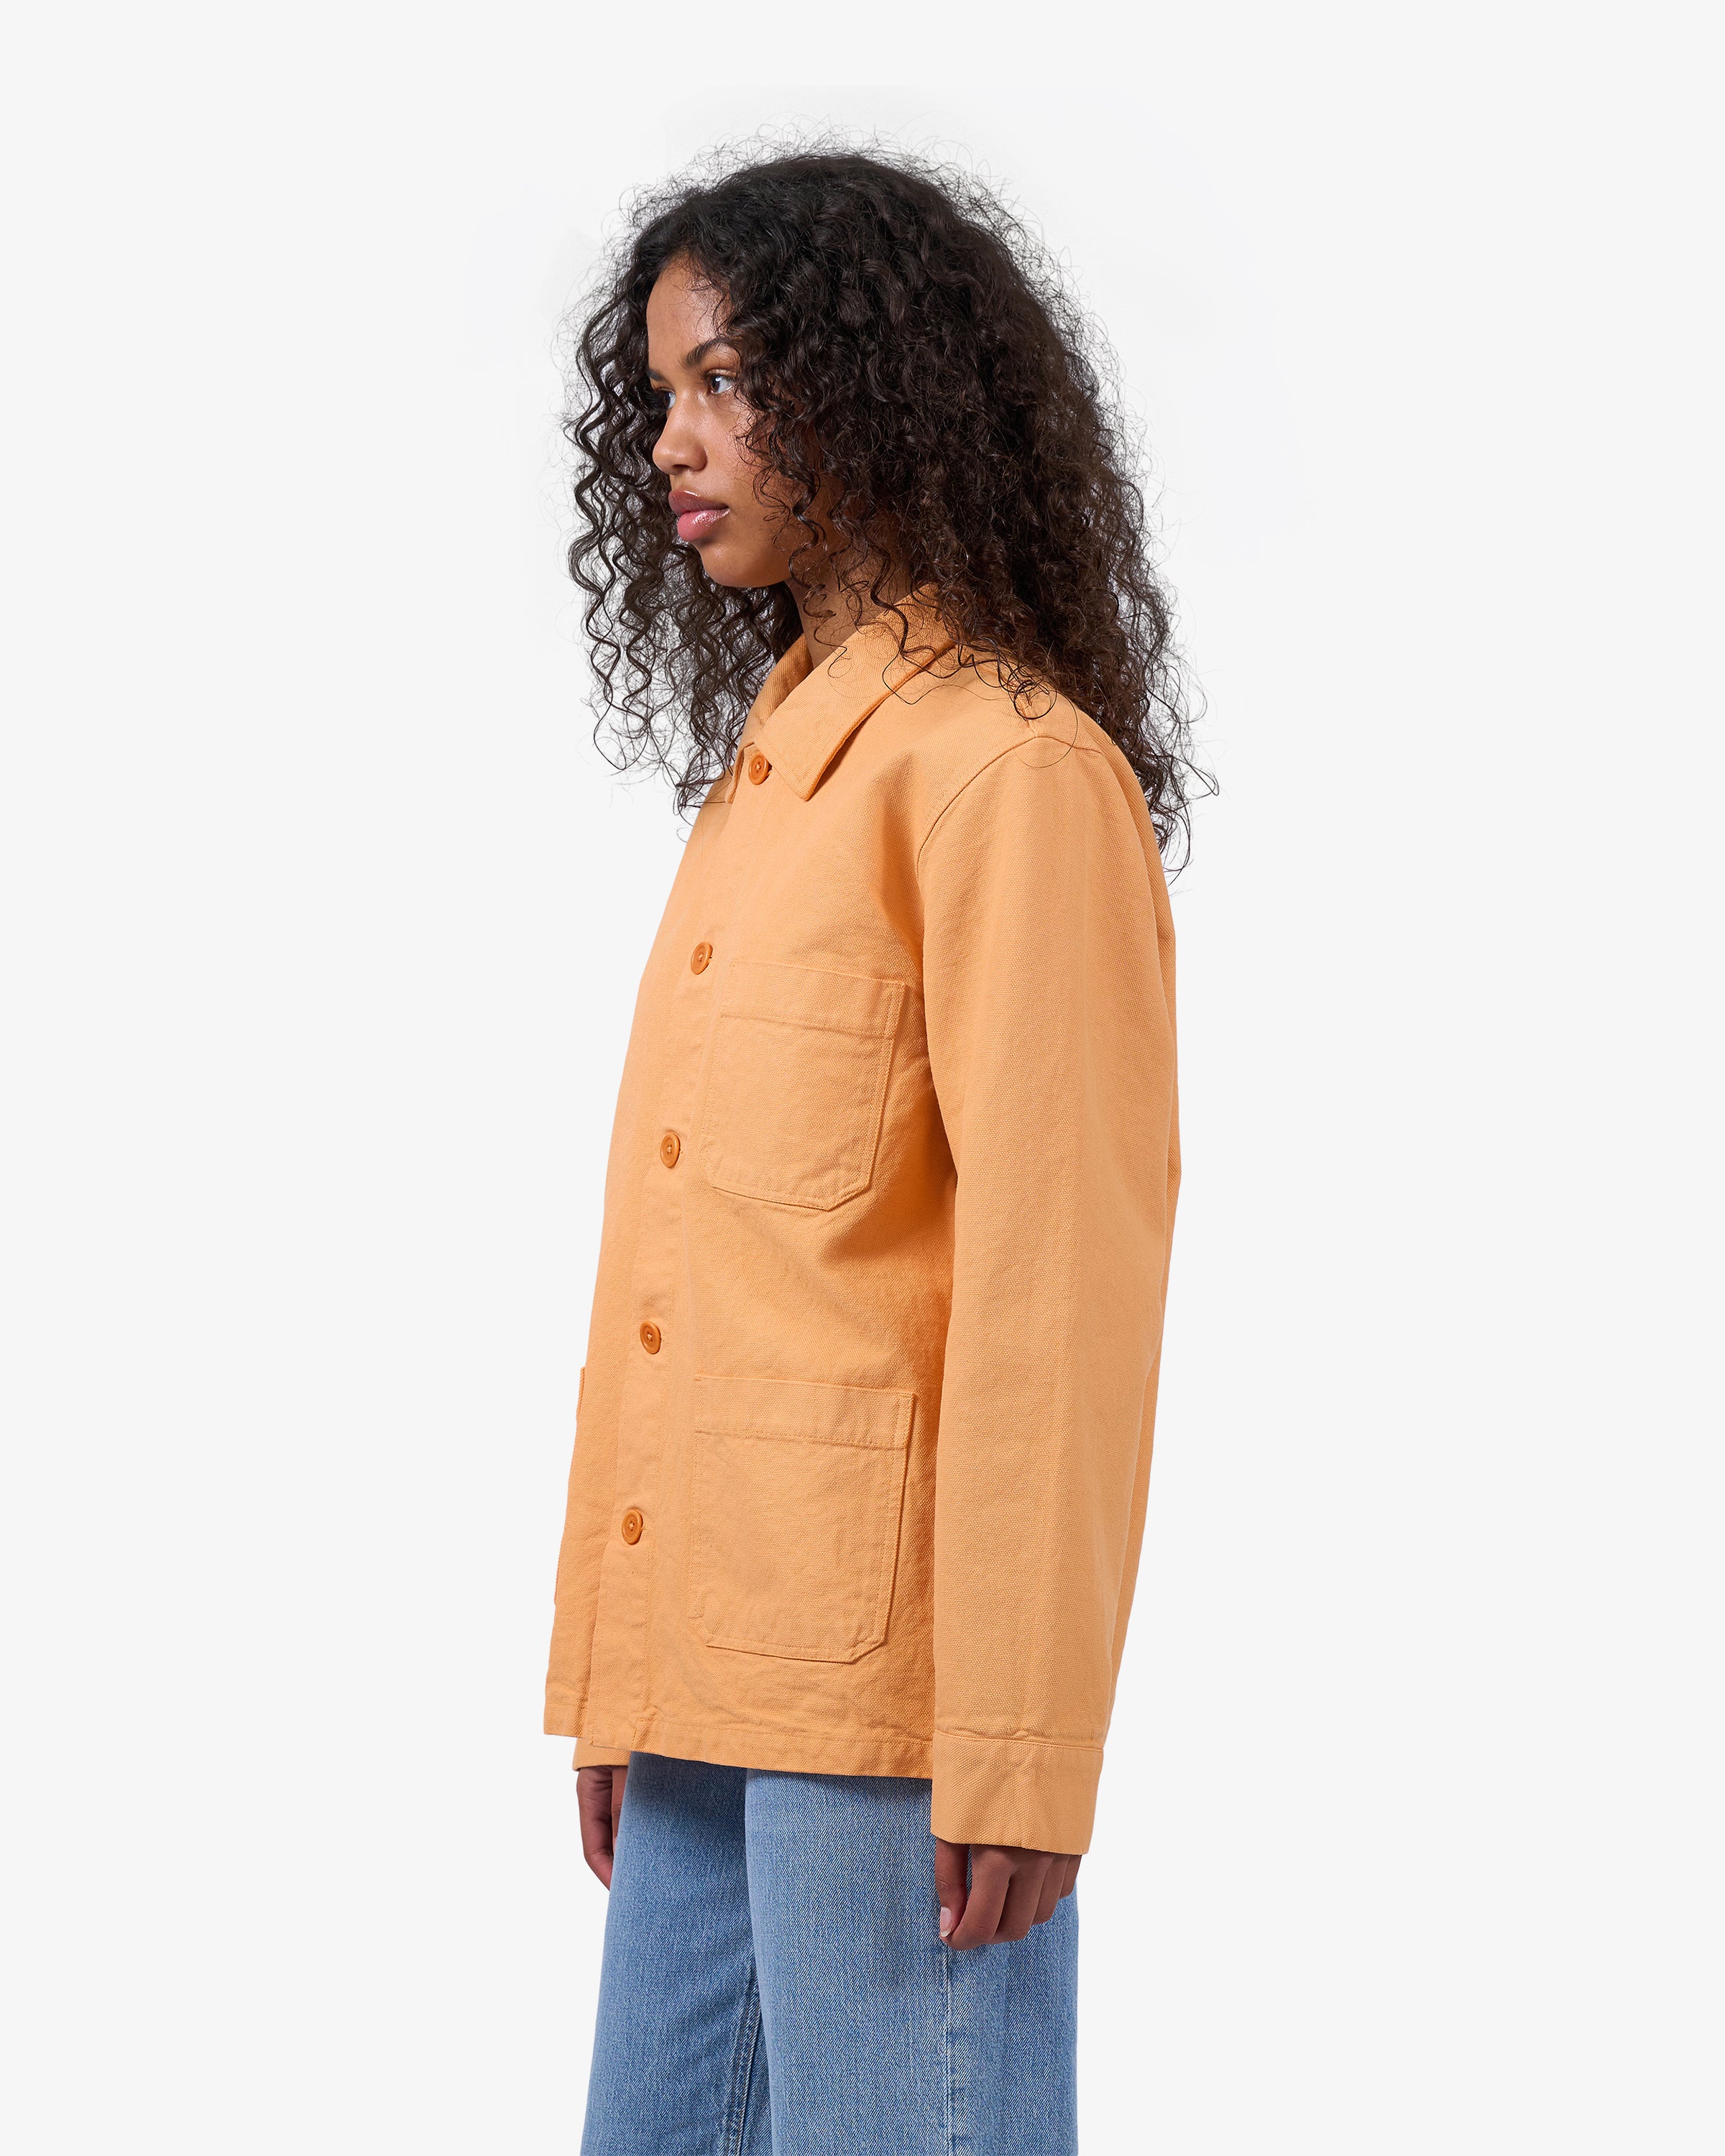 Organic Workwear Jacket - Sandstone Orange